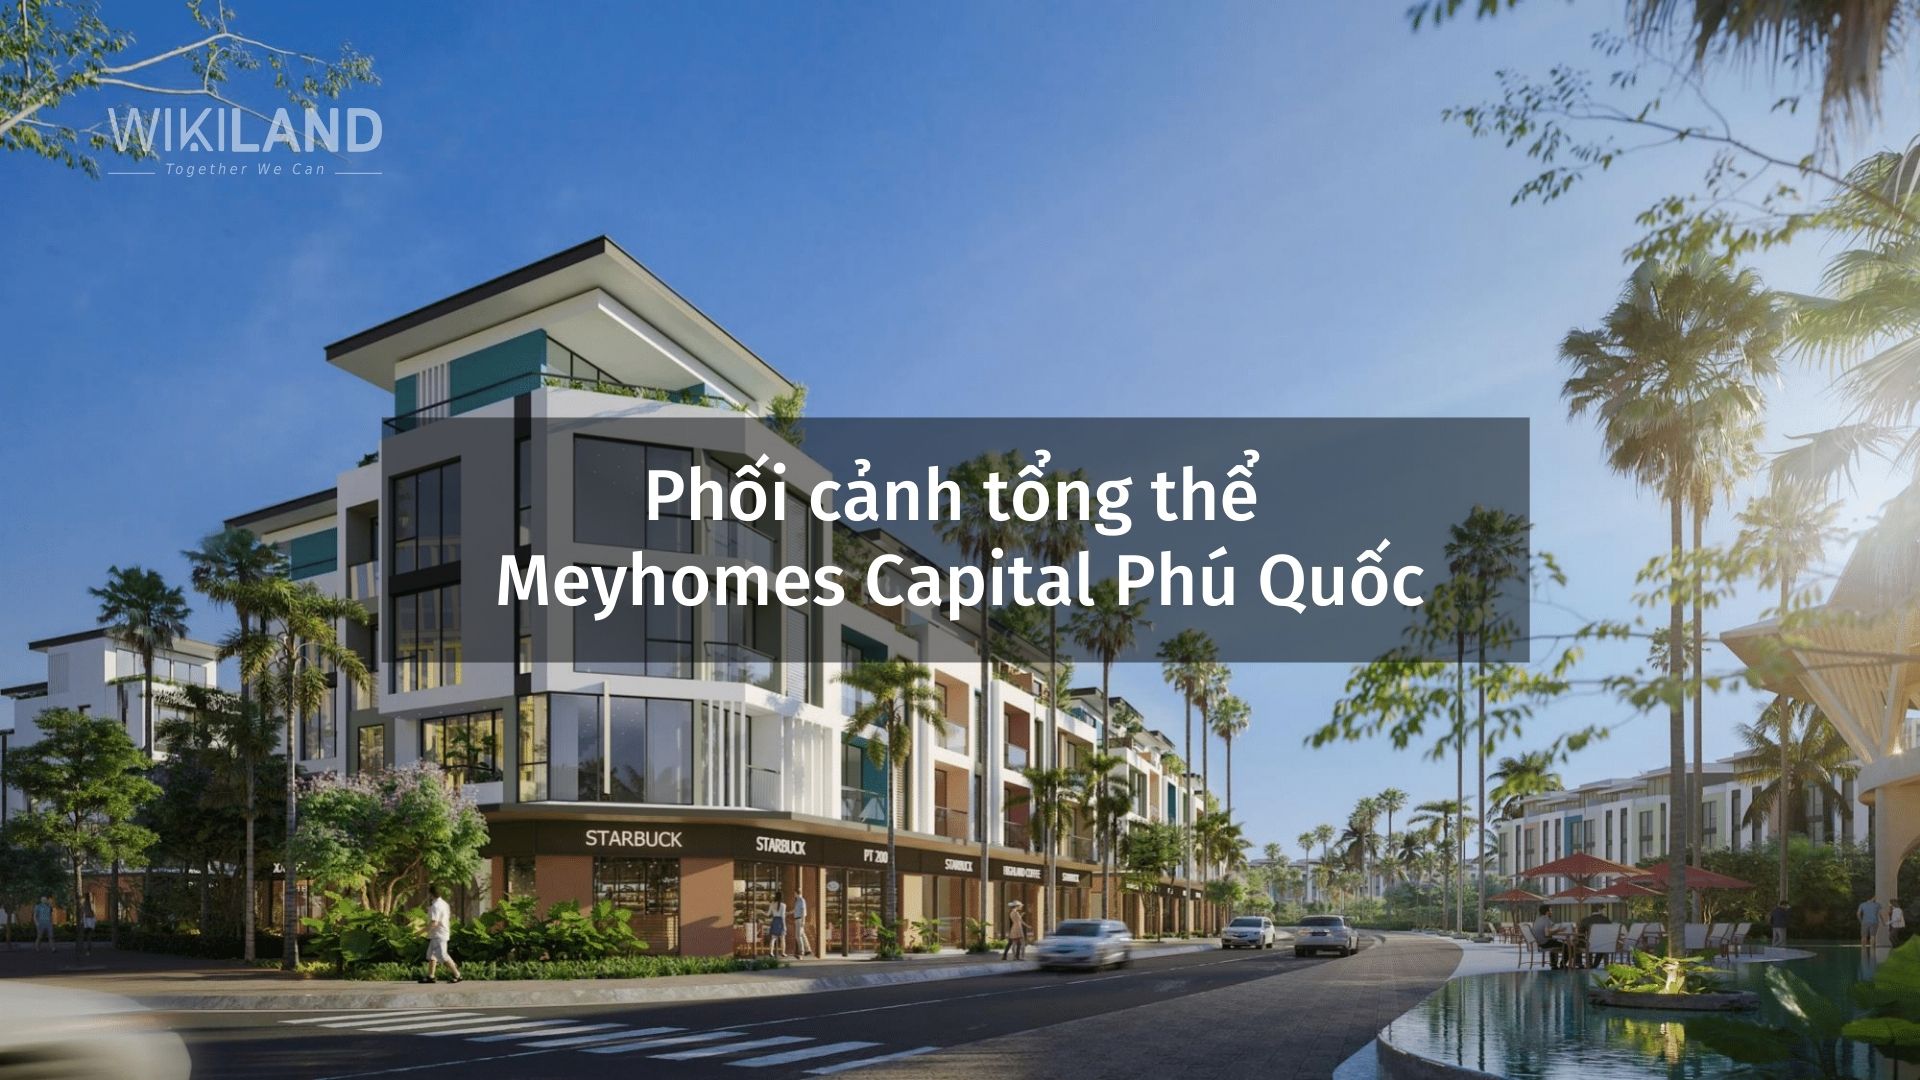 Phối cảnh tổng thể Dự án Meyhomes Capital Phú Quốc